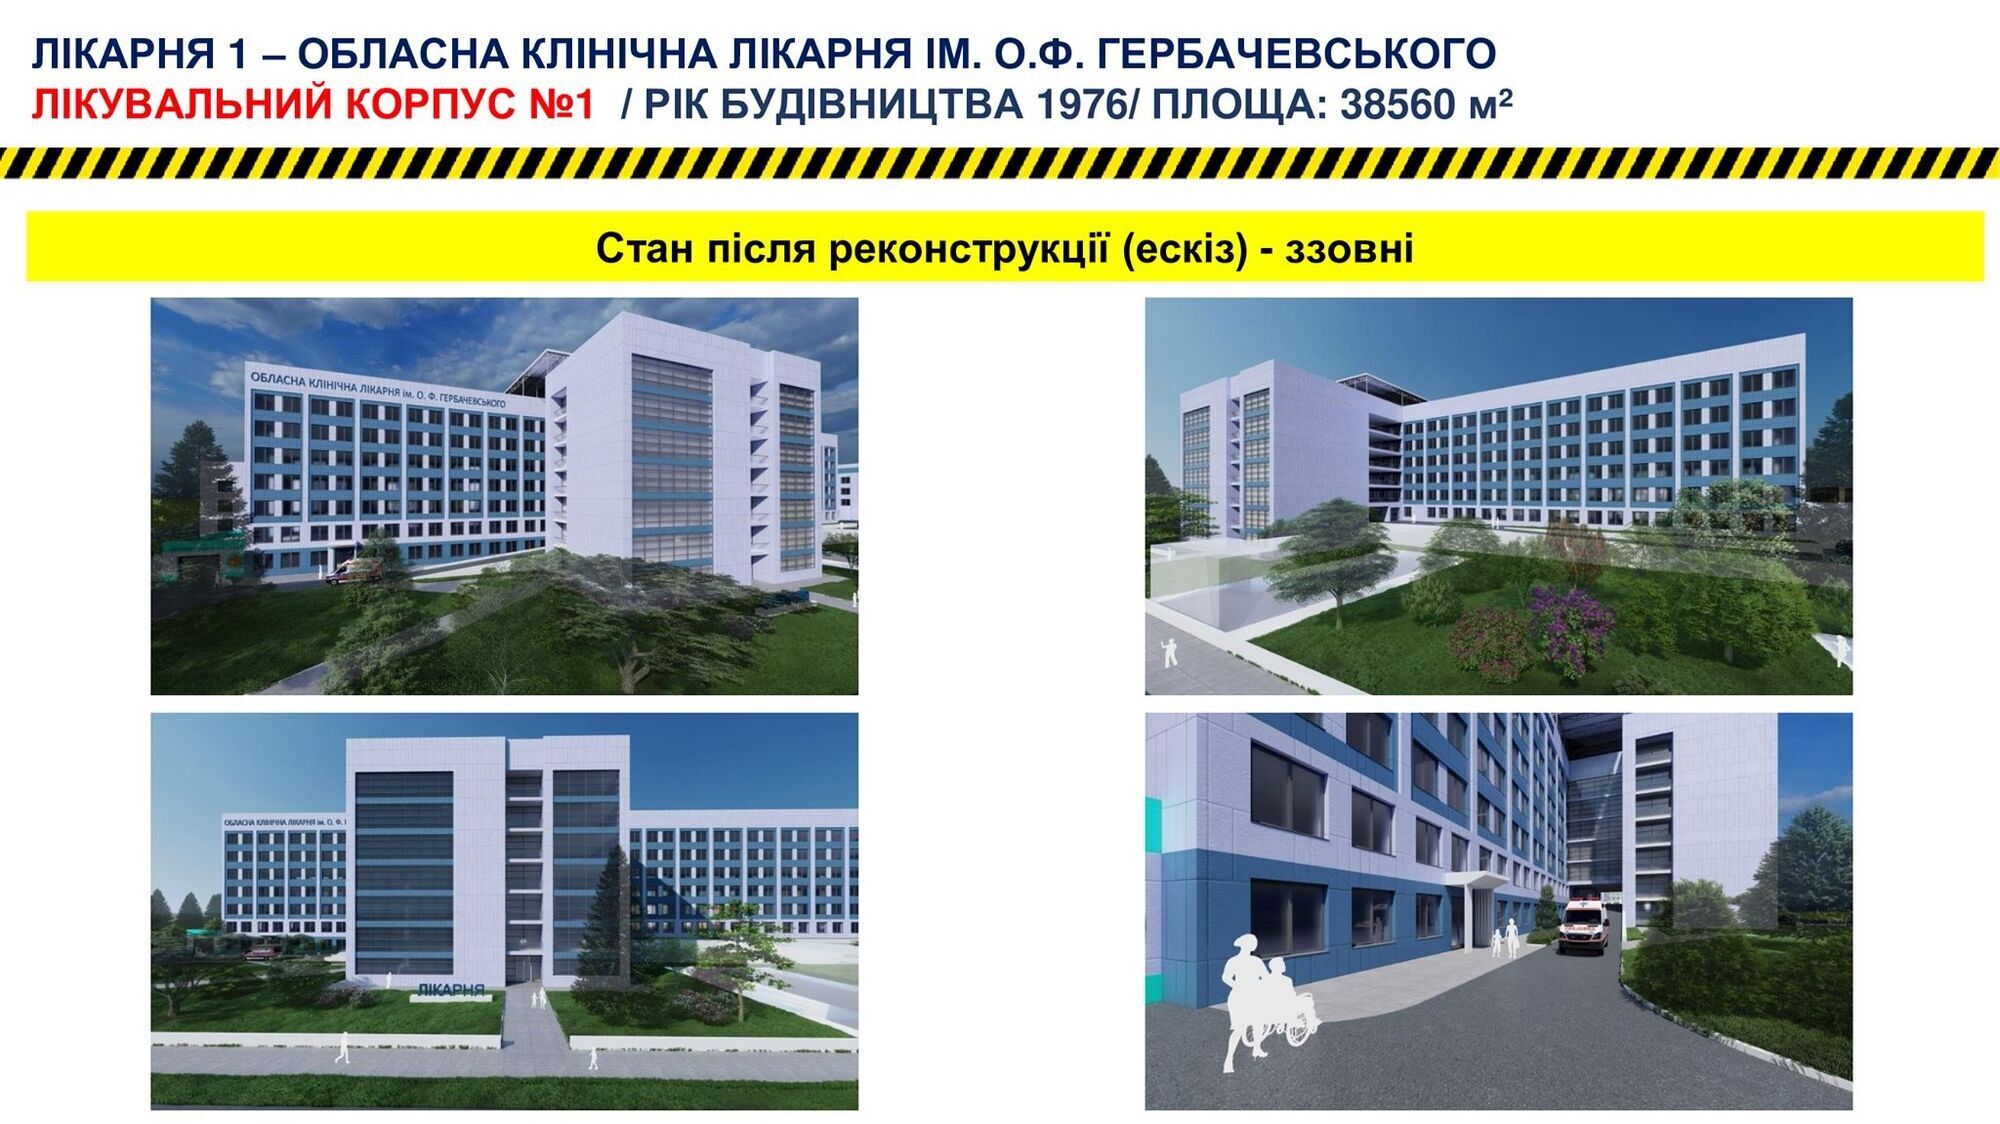 Планируется провести реконструкцию областной больницы им. О.Ф. Гербачевская и детская областная больница.